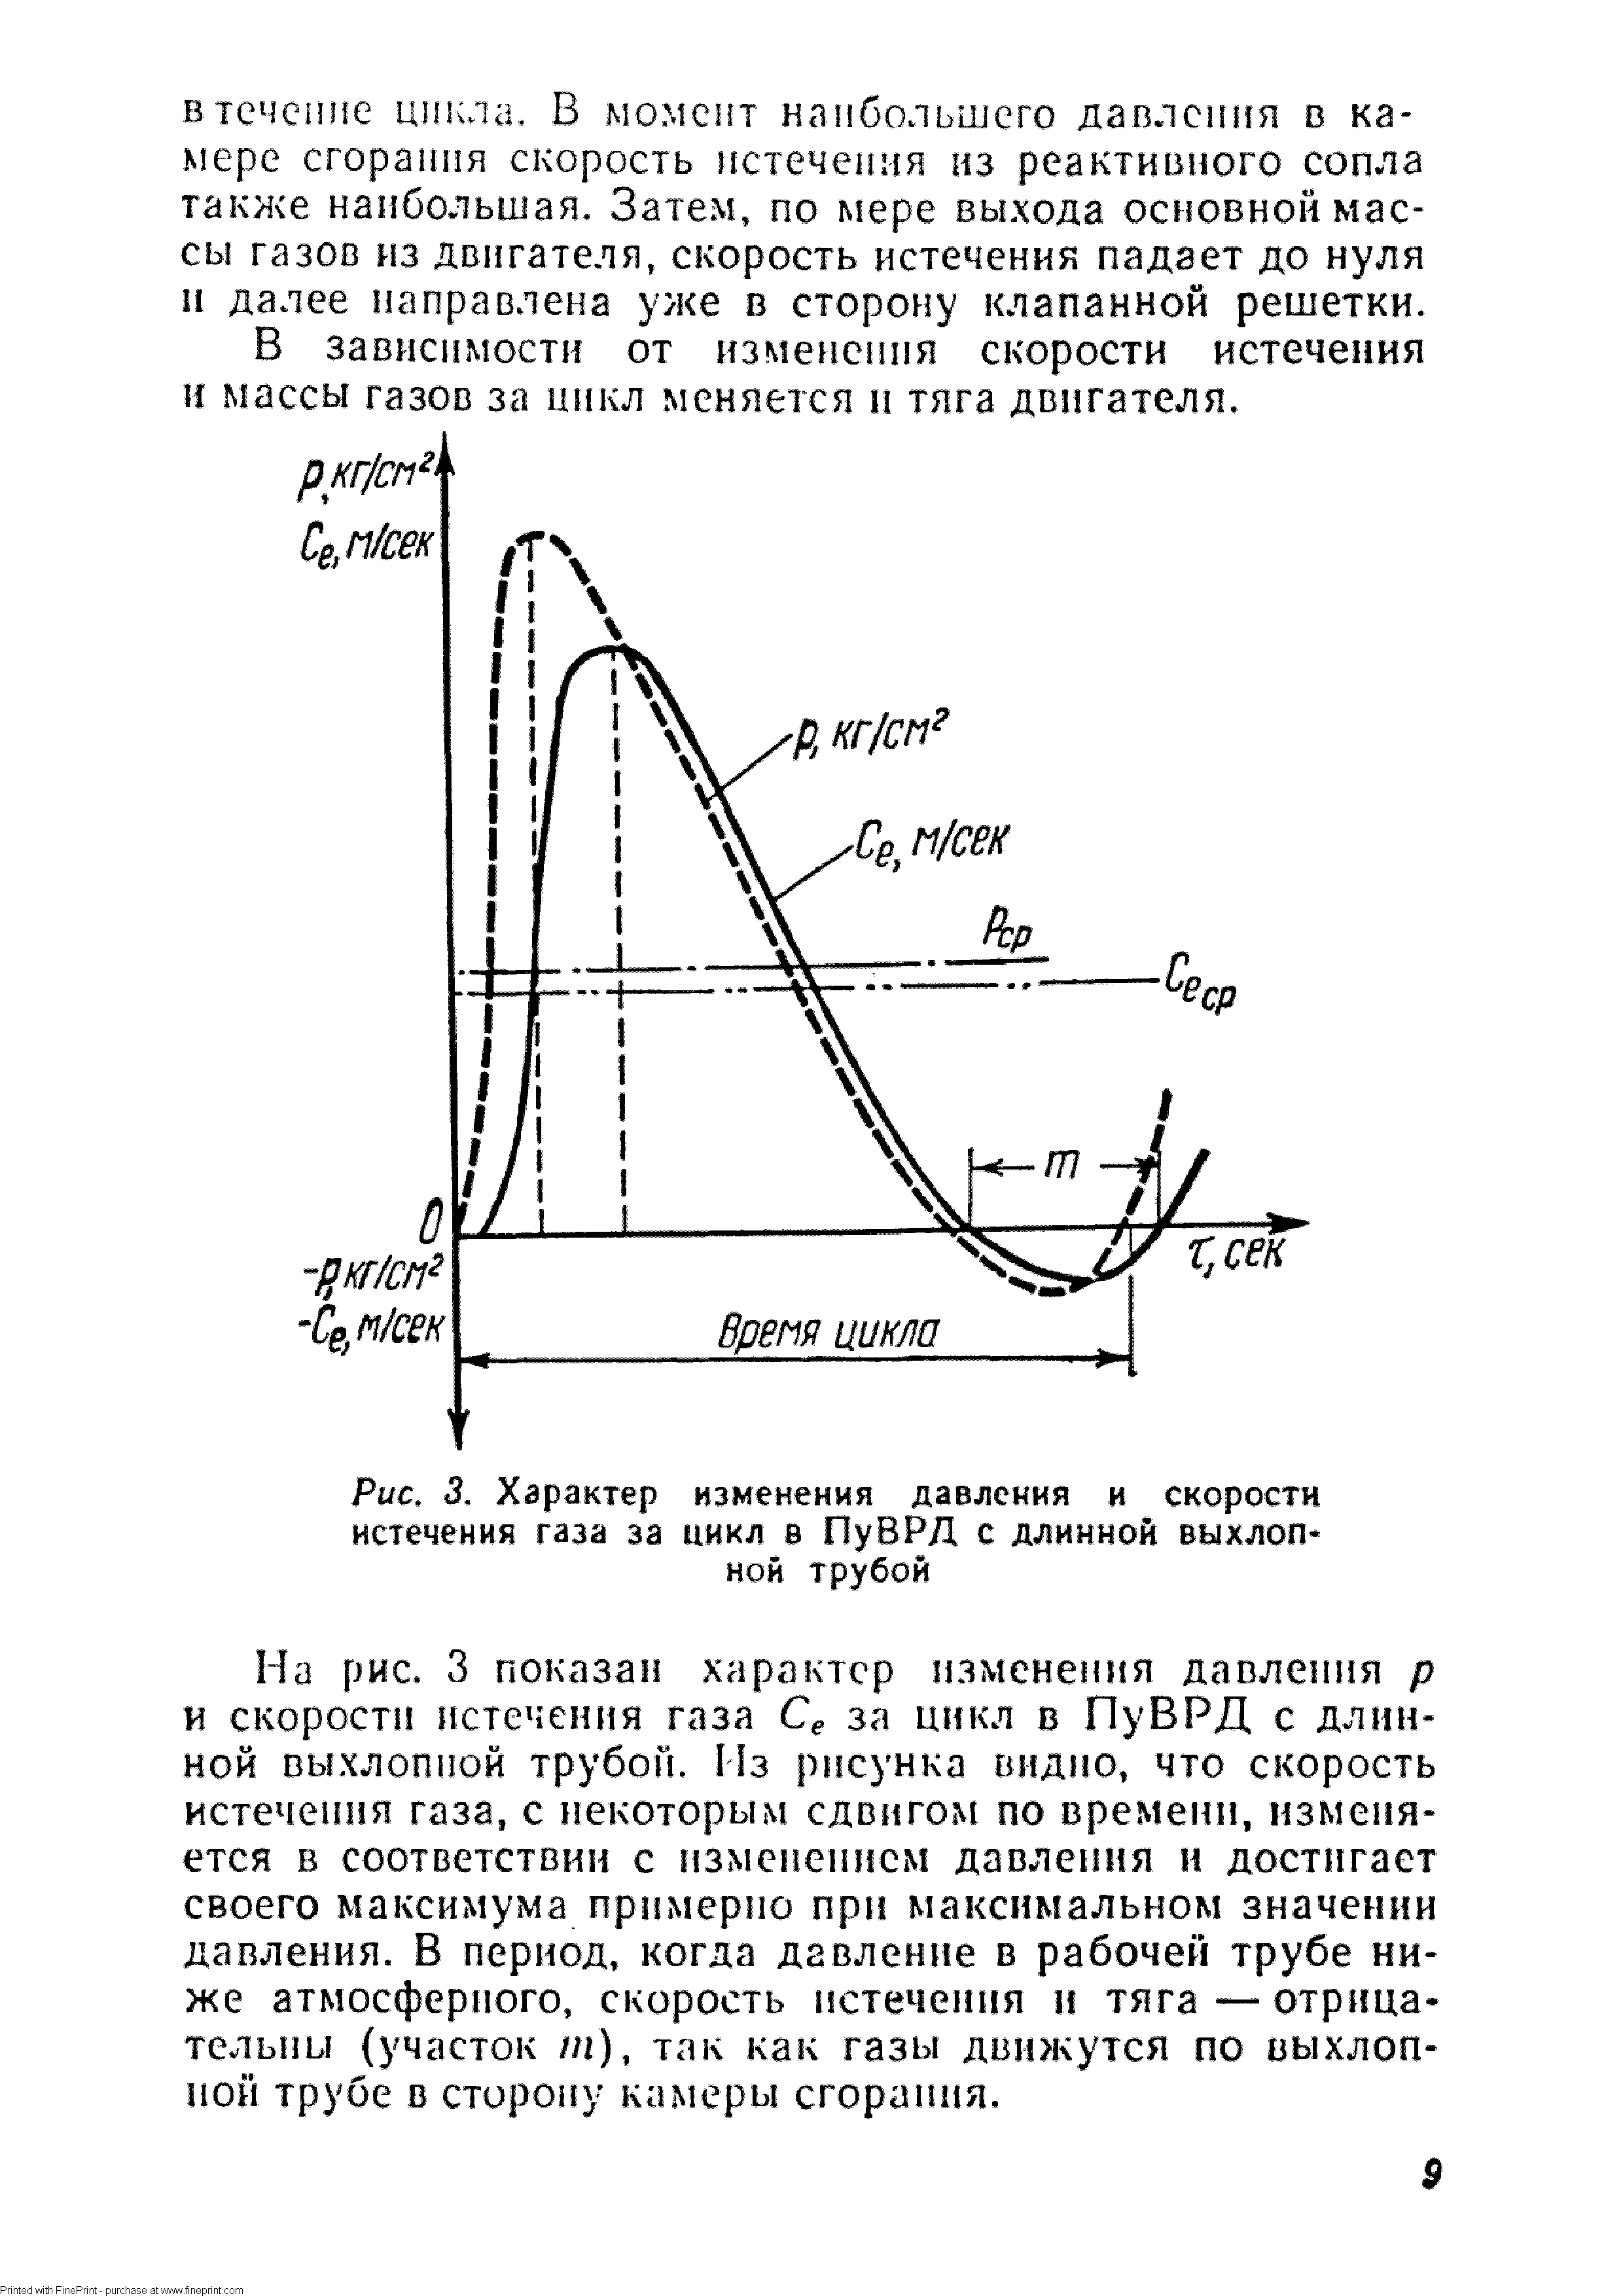 Сравните работы выполненные некоторой массой газа за время нескольких циклов изображенных на рисунке